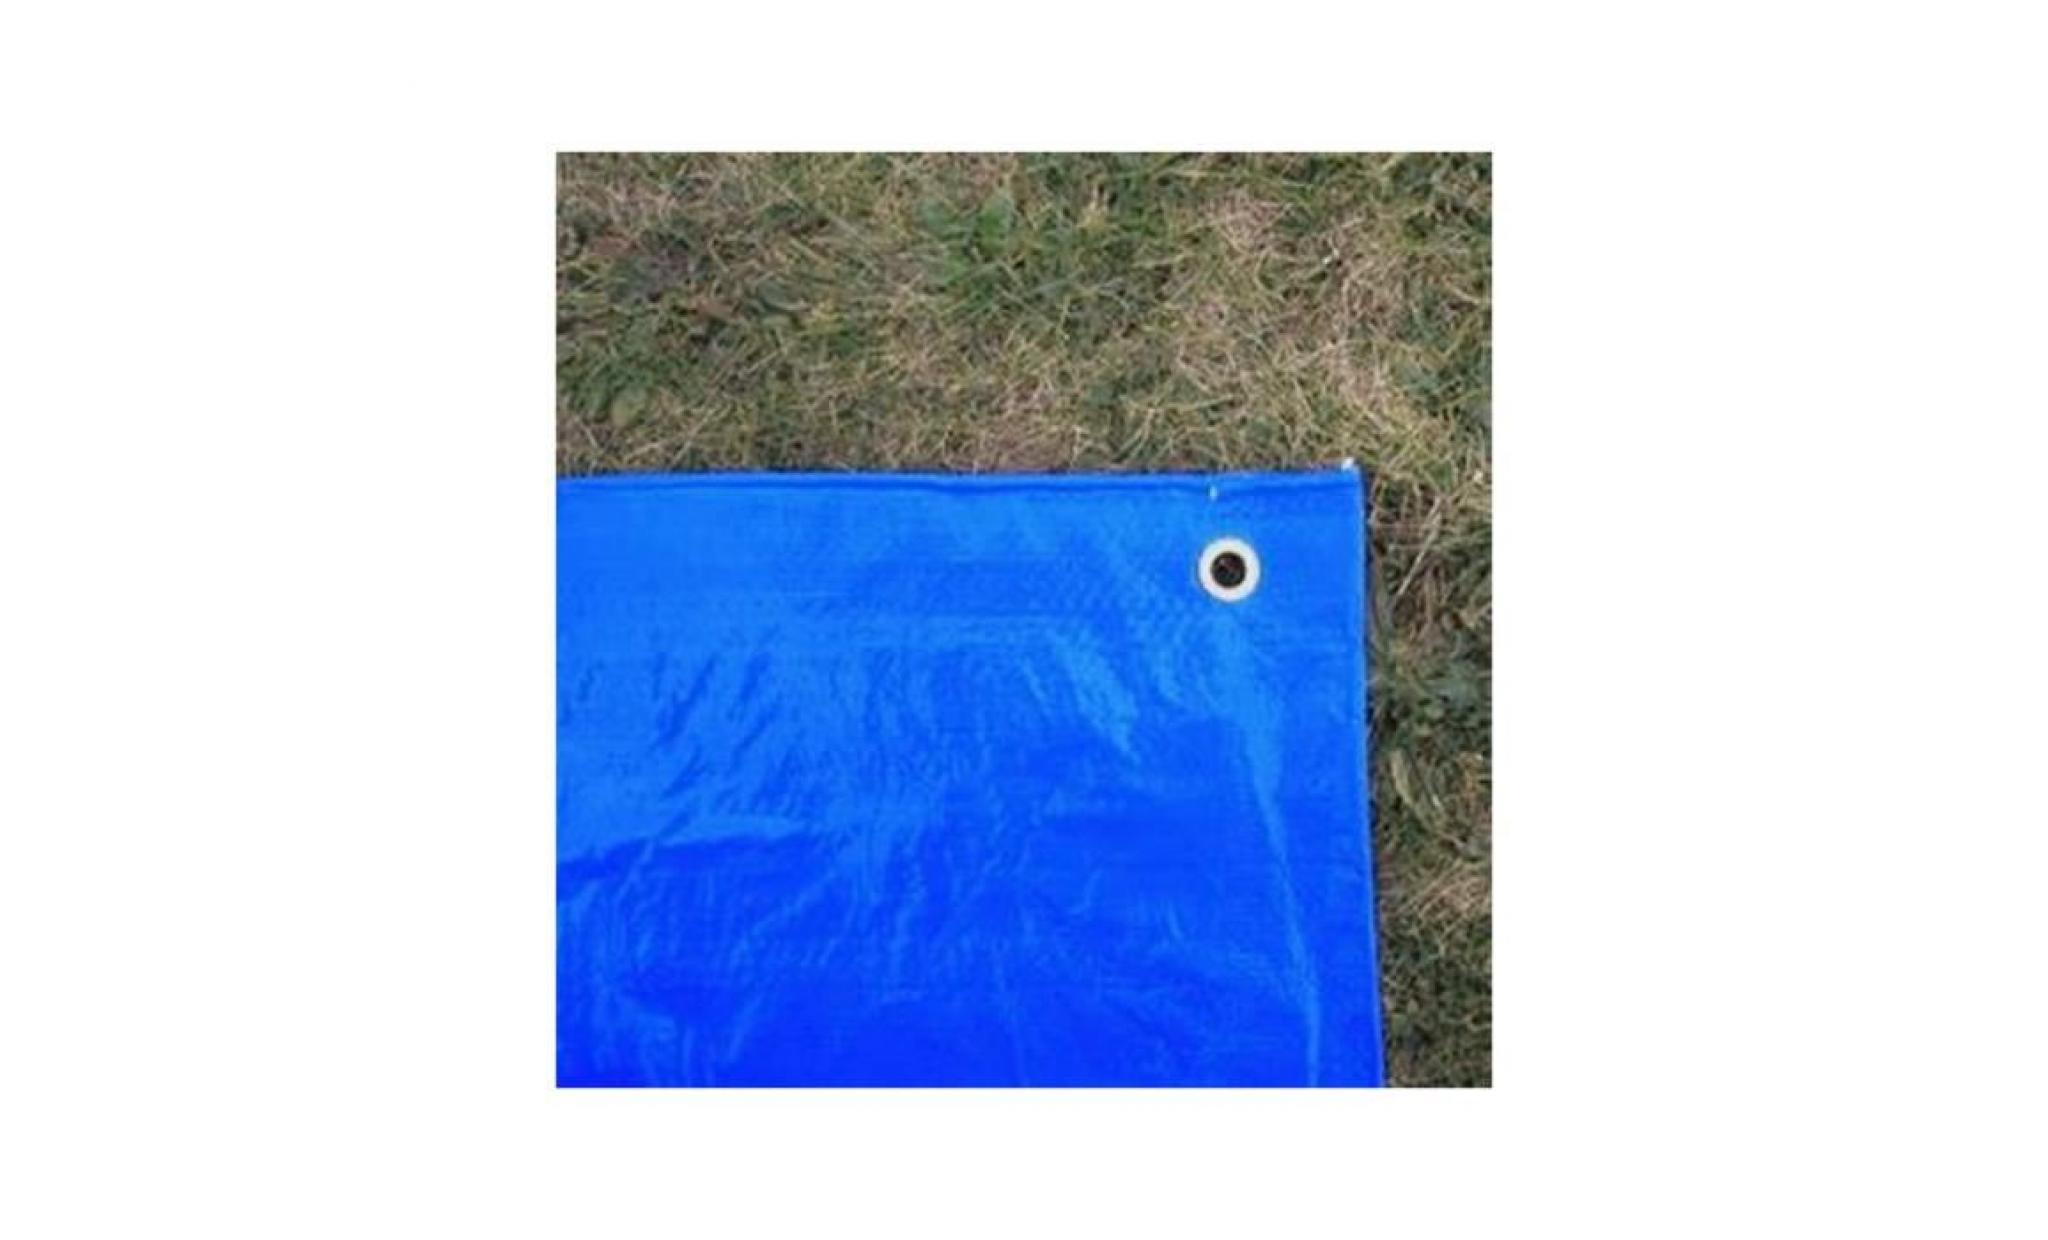 baches direct   bâche piscine 150 g/m²   4 x 5 m   couverture piscine   bache imperméable   baches piscine bicolore : verte et bleue pas cher